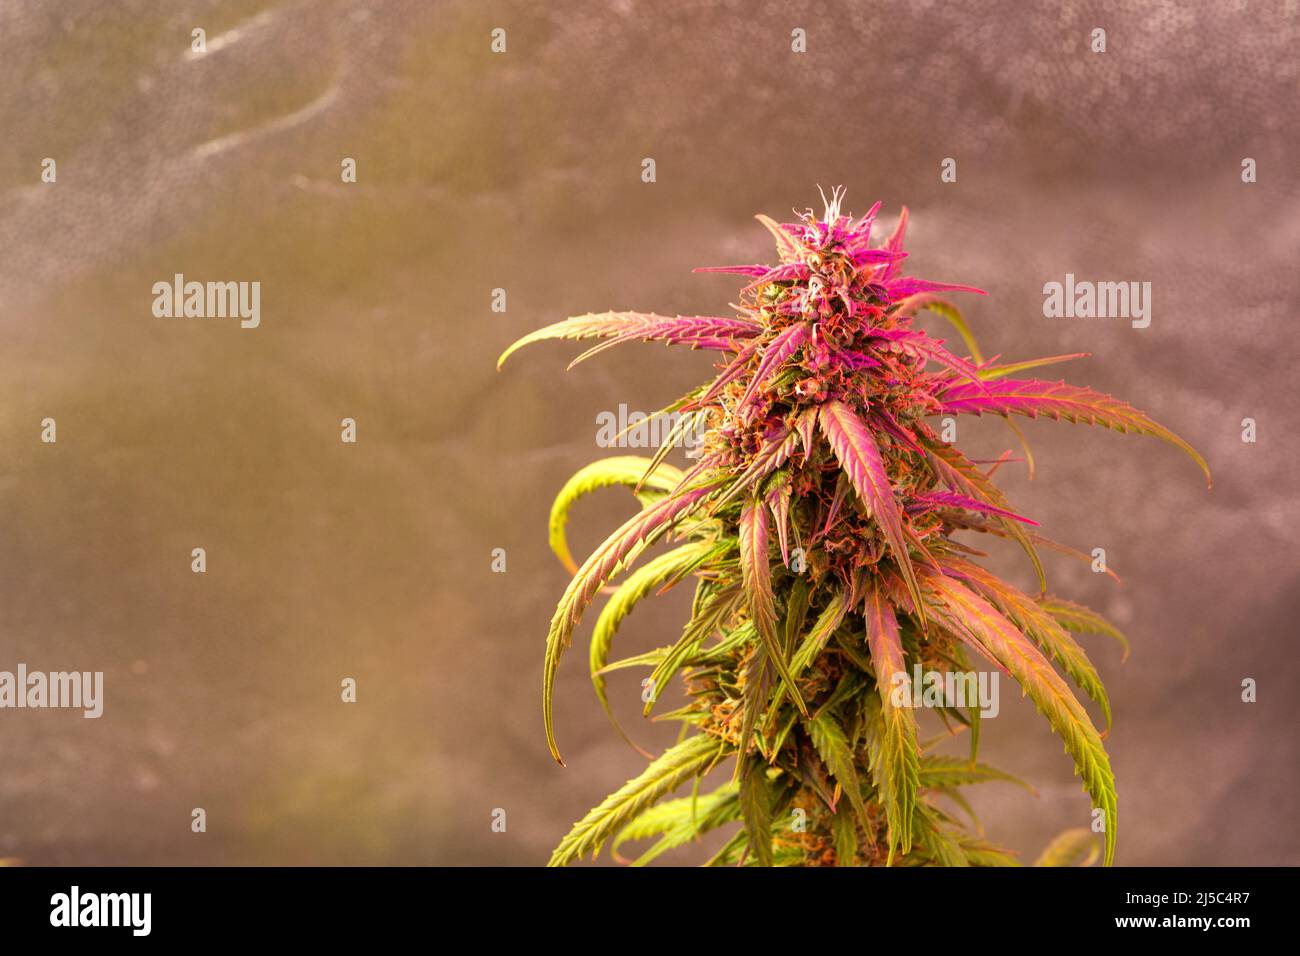 Legalización Del Cannabis. Pipa Para Fumar Marihuana CBD Y THC En Bud  Fotos, retratos, imágenes y fotografía de archivo libres de derecho. Image  151368661